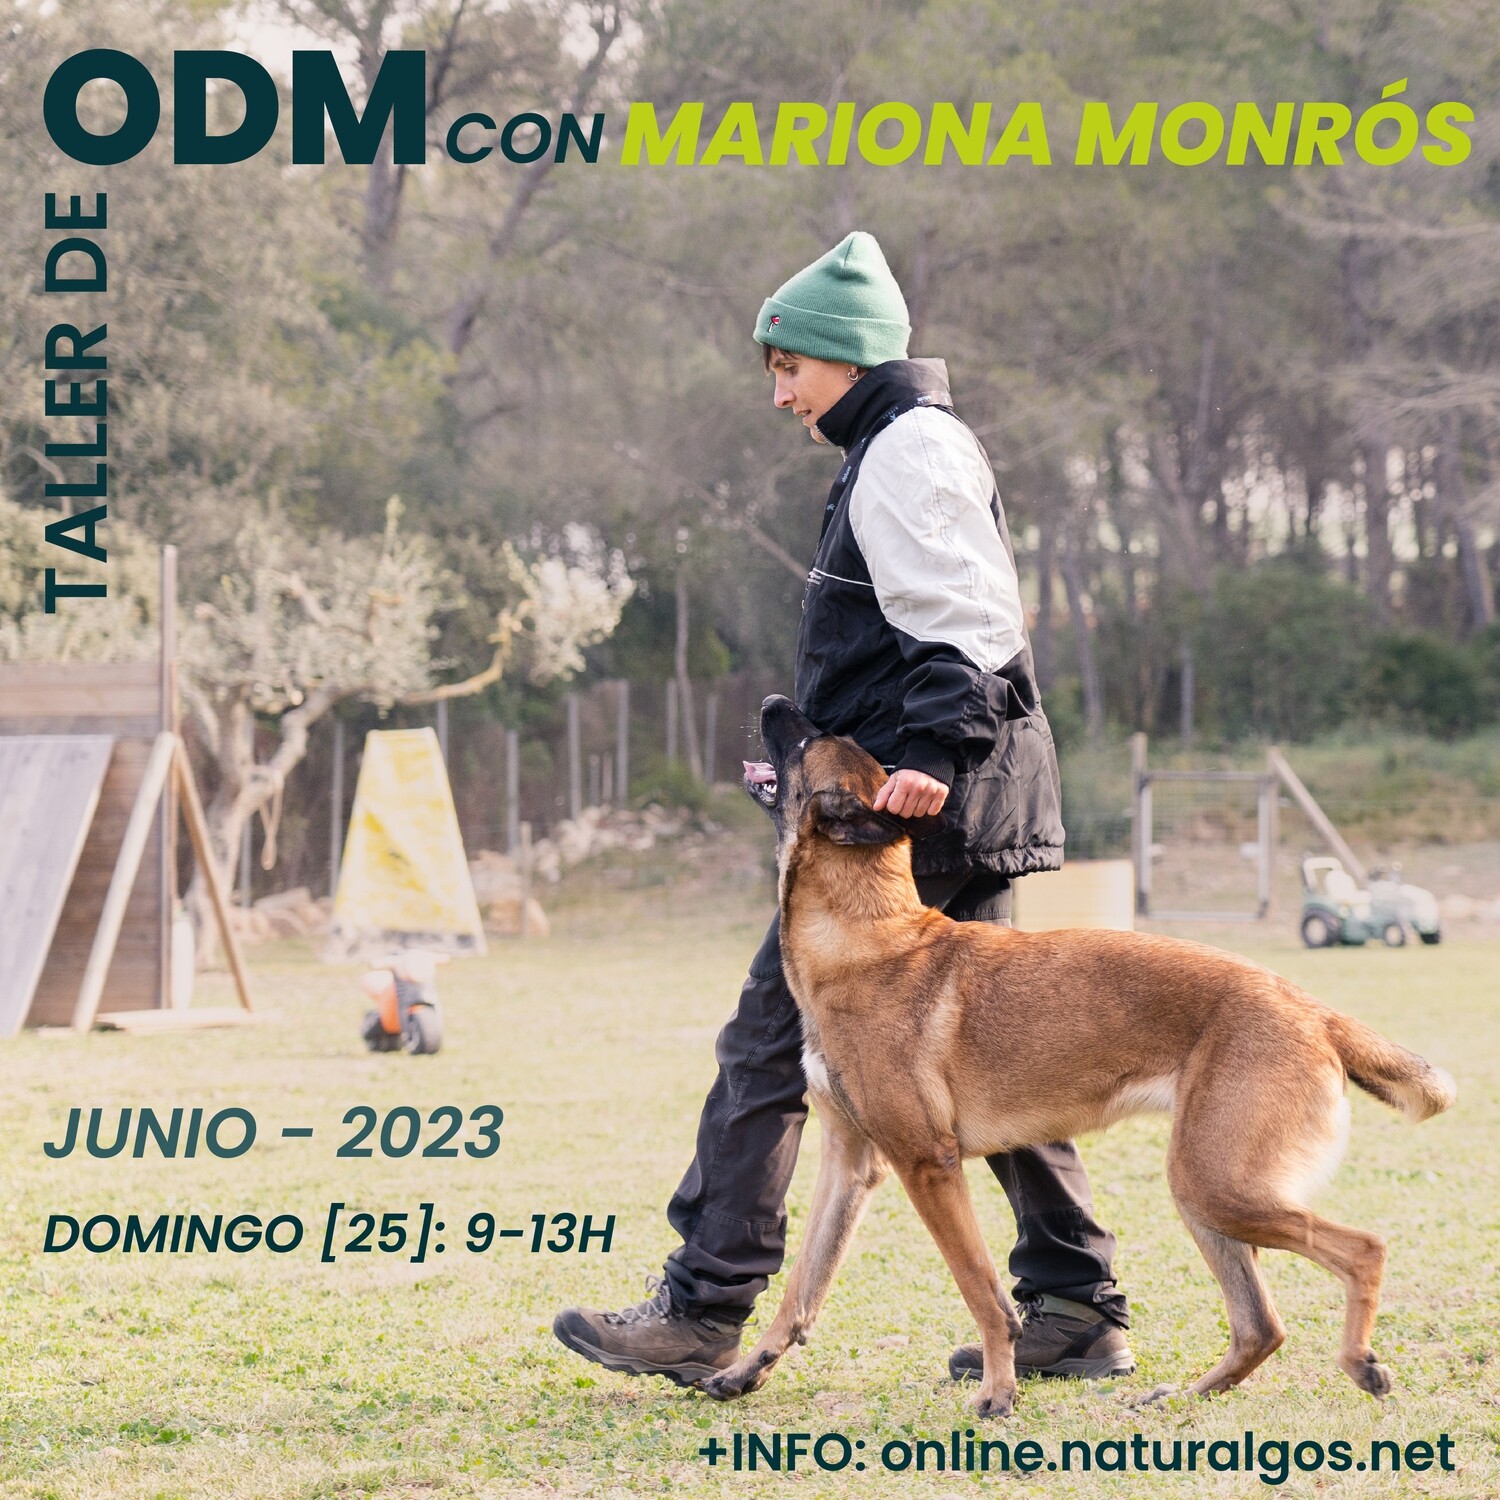 Taller de ODM con Mariona Monrós